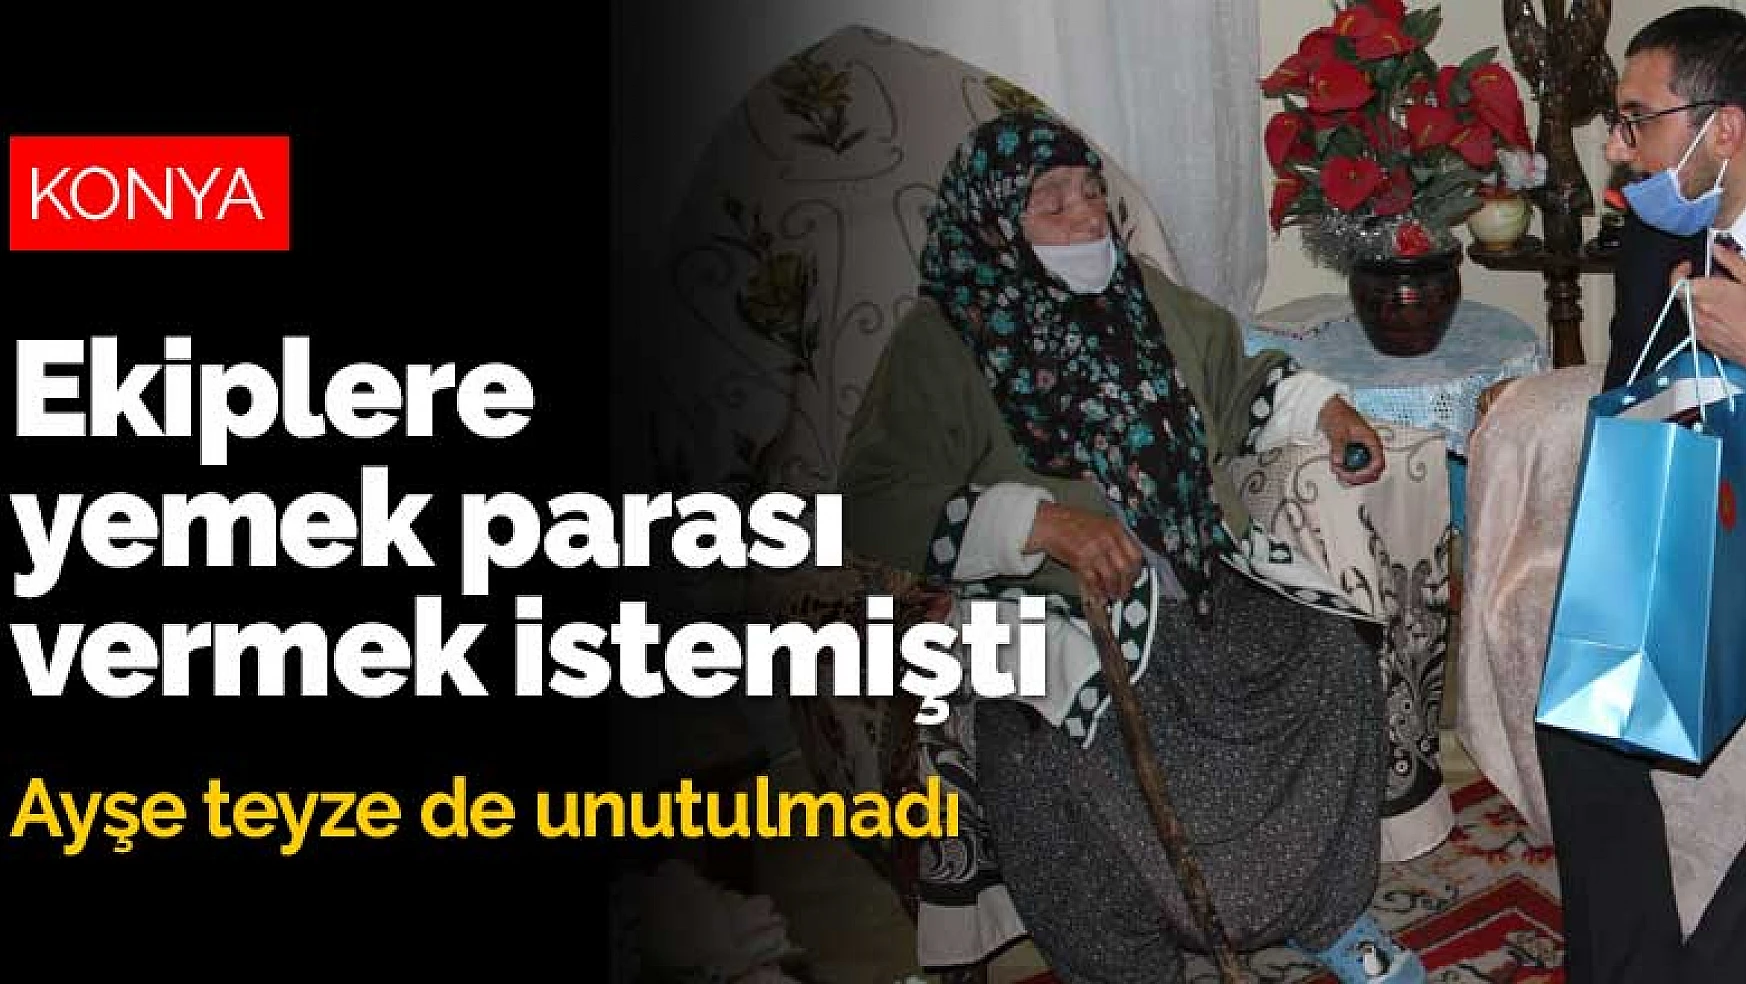 Konya'da mahsur kaldığı balkondan kurtarılınca ekiplere yemek parası vermek isteyen Ayşe teyze de unutulmadı